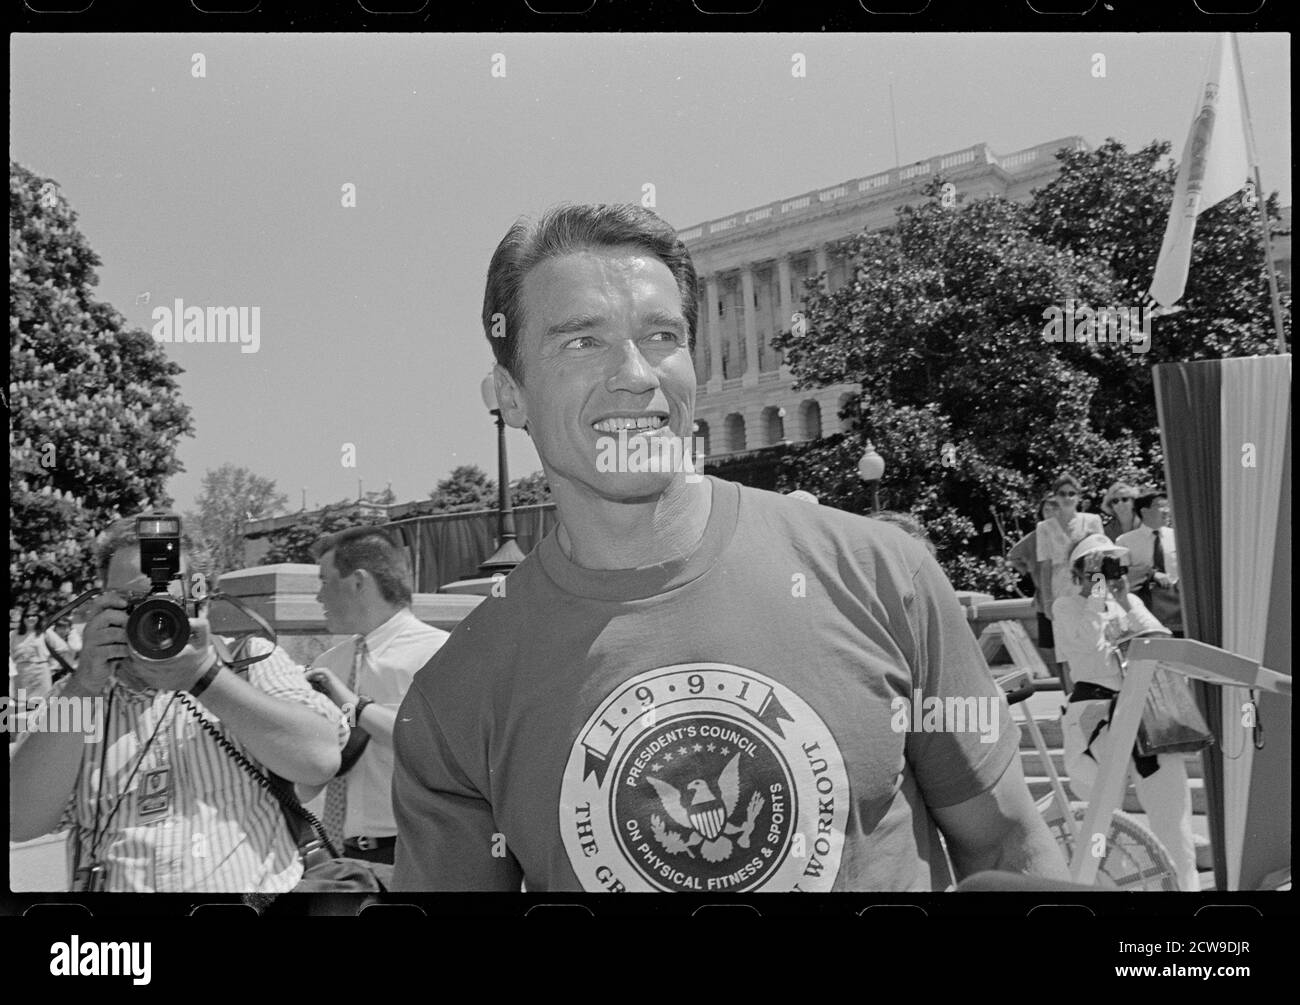 Schauspieler und Bodybuilder Arnold Schwarzenegger (geb. 1947) auf dem Capitol Hill für eine Veranstaltung im Zusammenhang mit dem President's Council on Physical Fitness and Sports, Washington, DC, 1991. (Foto von Maureen Keating/CQ Roll Call Photography Collection/RBM Vintage Images) Stockfoto